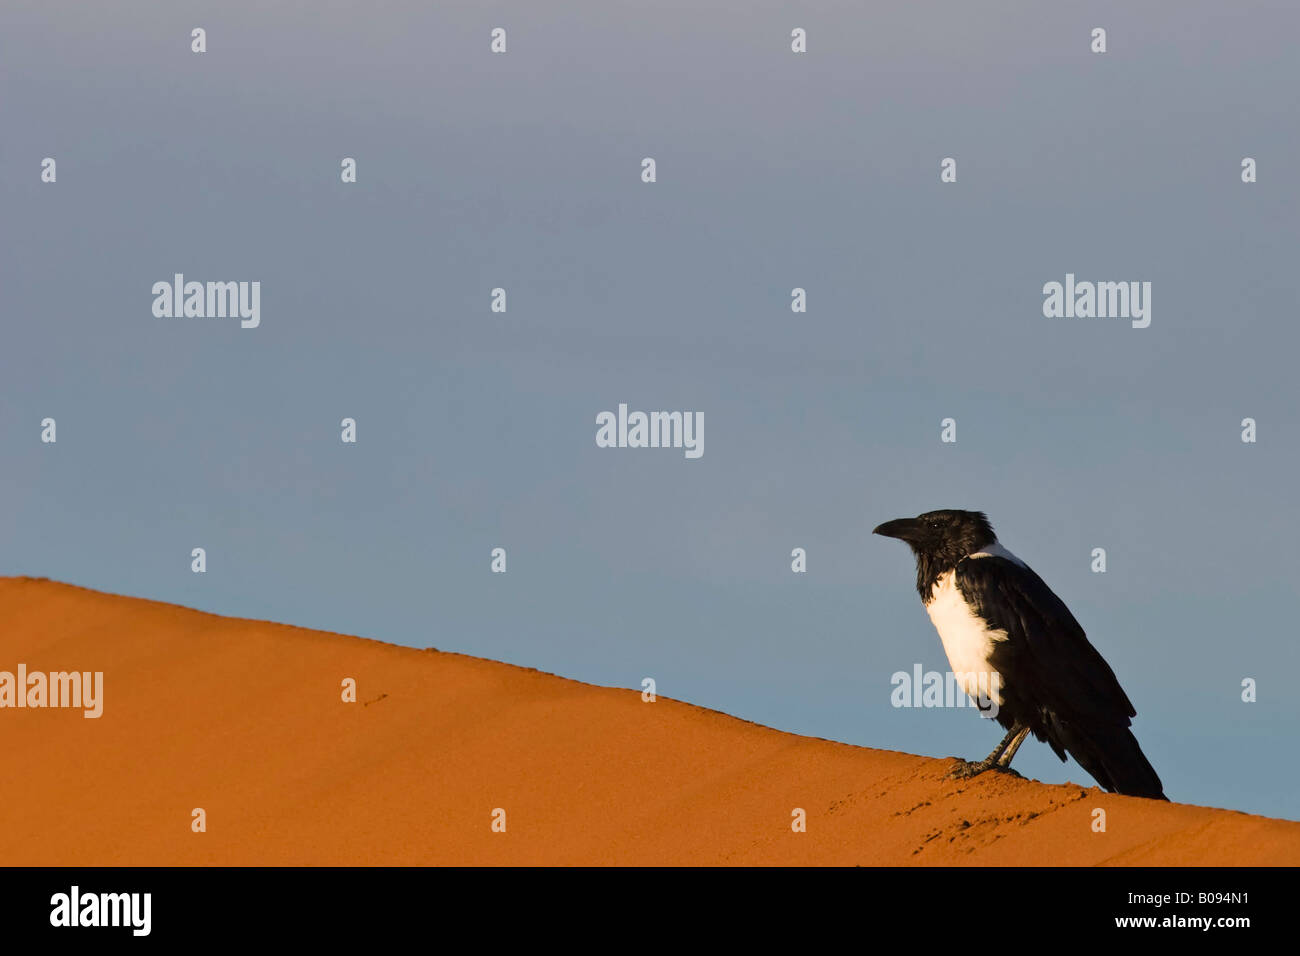 Pied Crow (Corvus albus) on a sand dune, Deadvlei, Namib Desert, Namibia, Africa Stock Photo